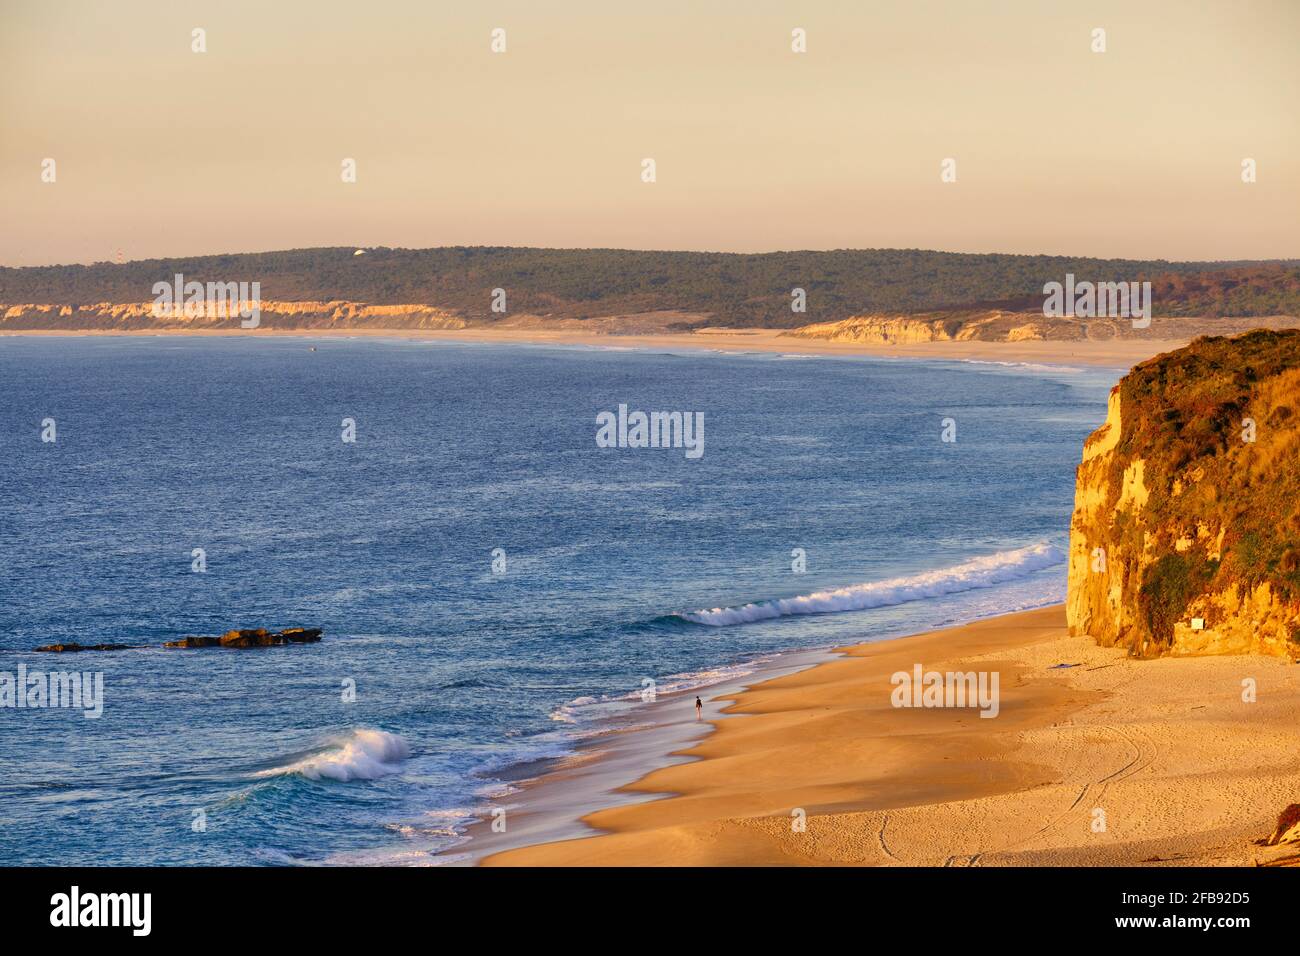 Praia das Bicas (Bicas beach). Sesimbra, Portugal Stock Photo